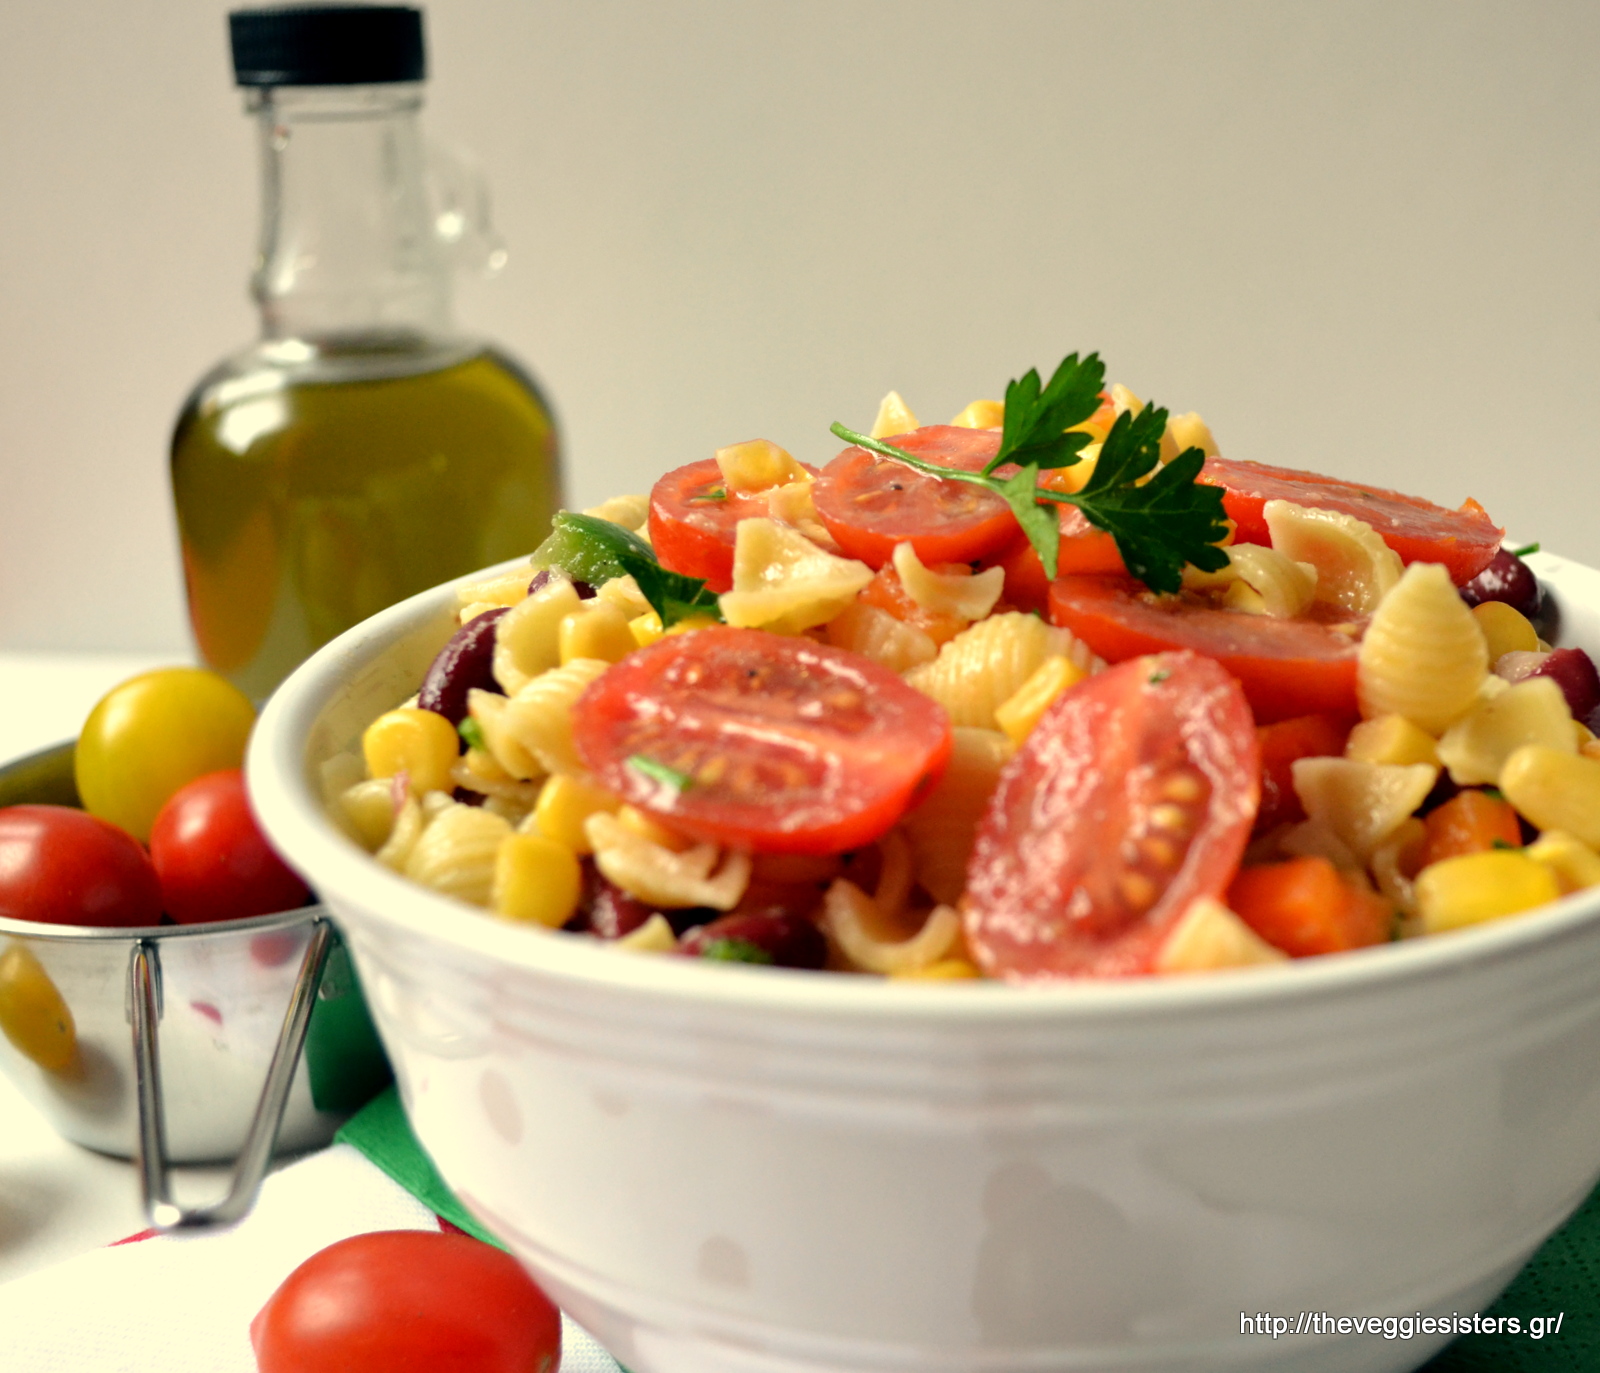 Δροσιστική σαλάτα με ζυμαρικά, λαχανικά κ κόκκινα φασόλια - Refreshing pasta salad with veggies and red beans